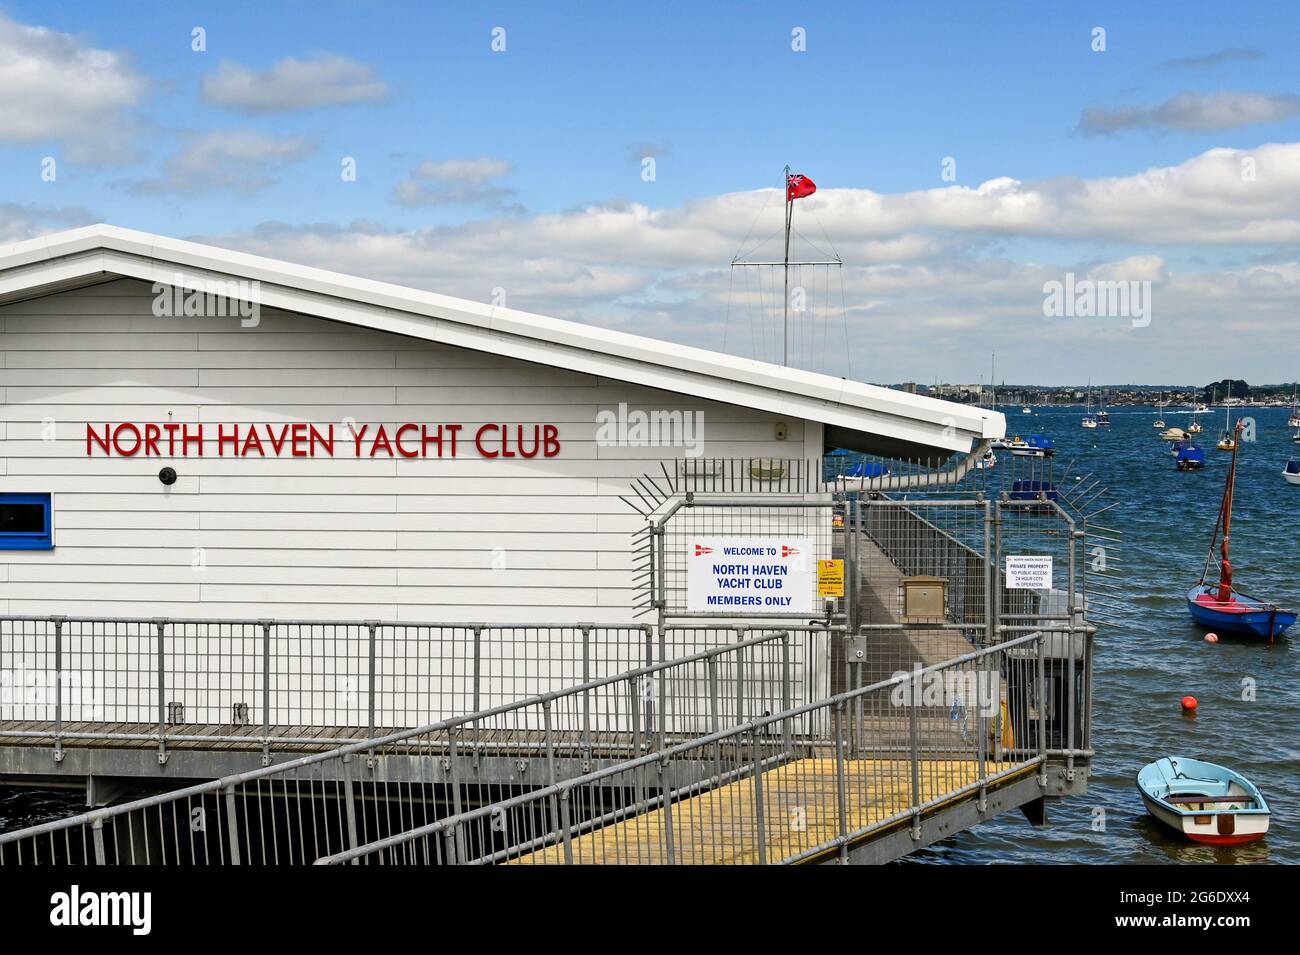 Poole, England - Juni 2021: Außenansicht des North Haven Yacht Club Gebäudes mit Blick auf den Hafen von Poole Stockfoto